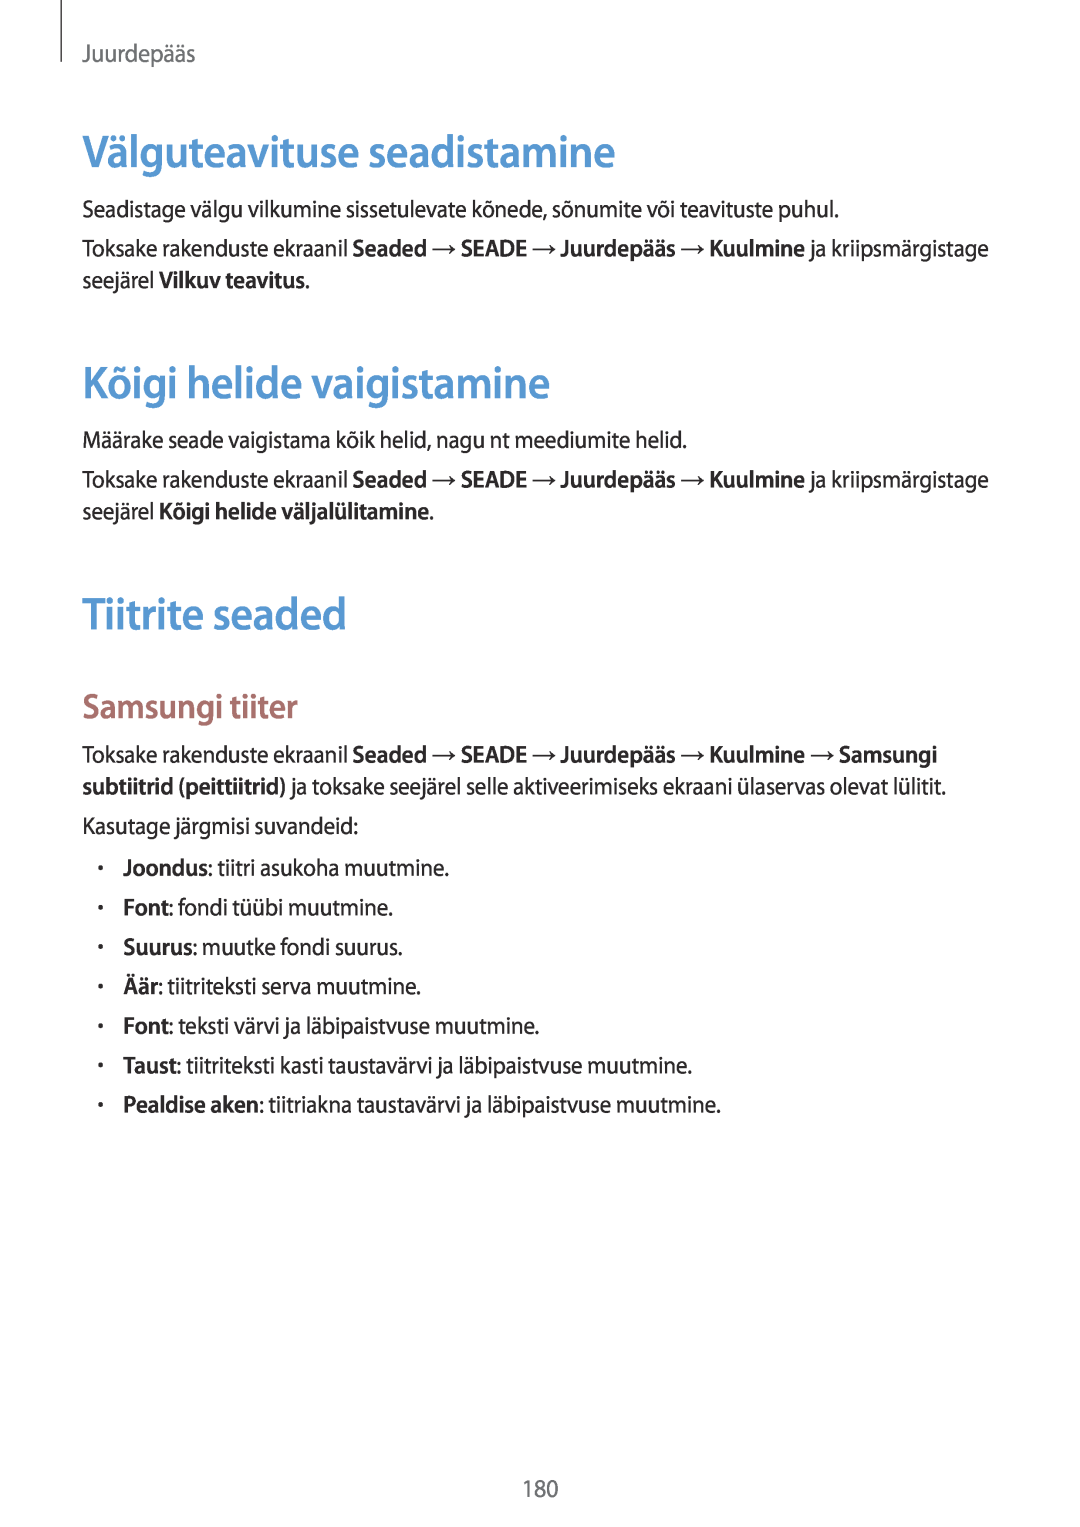 Samsung SM-T700NZWASEB manual Välguteavituse seadistamine, Kõigi helide vaigistamine, Tiitrite seaded, Samsungi tiiter 